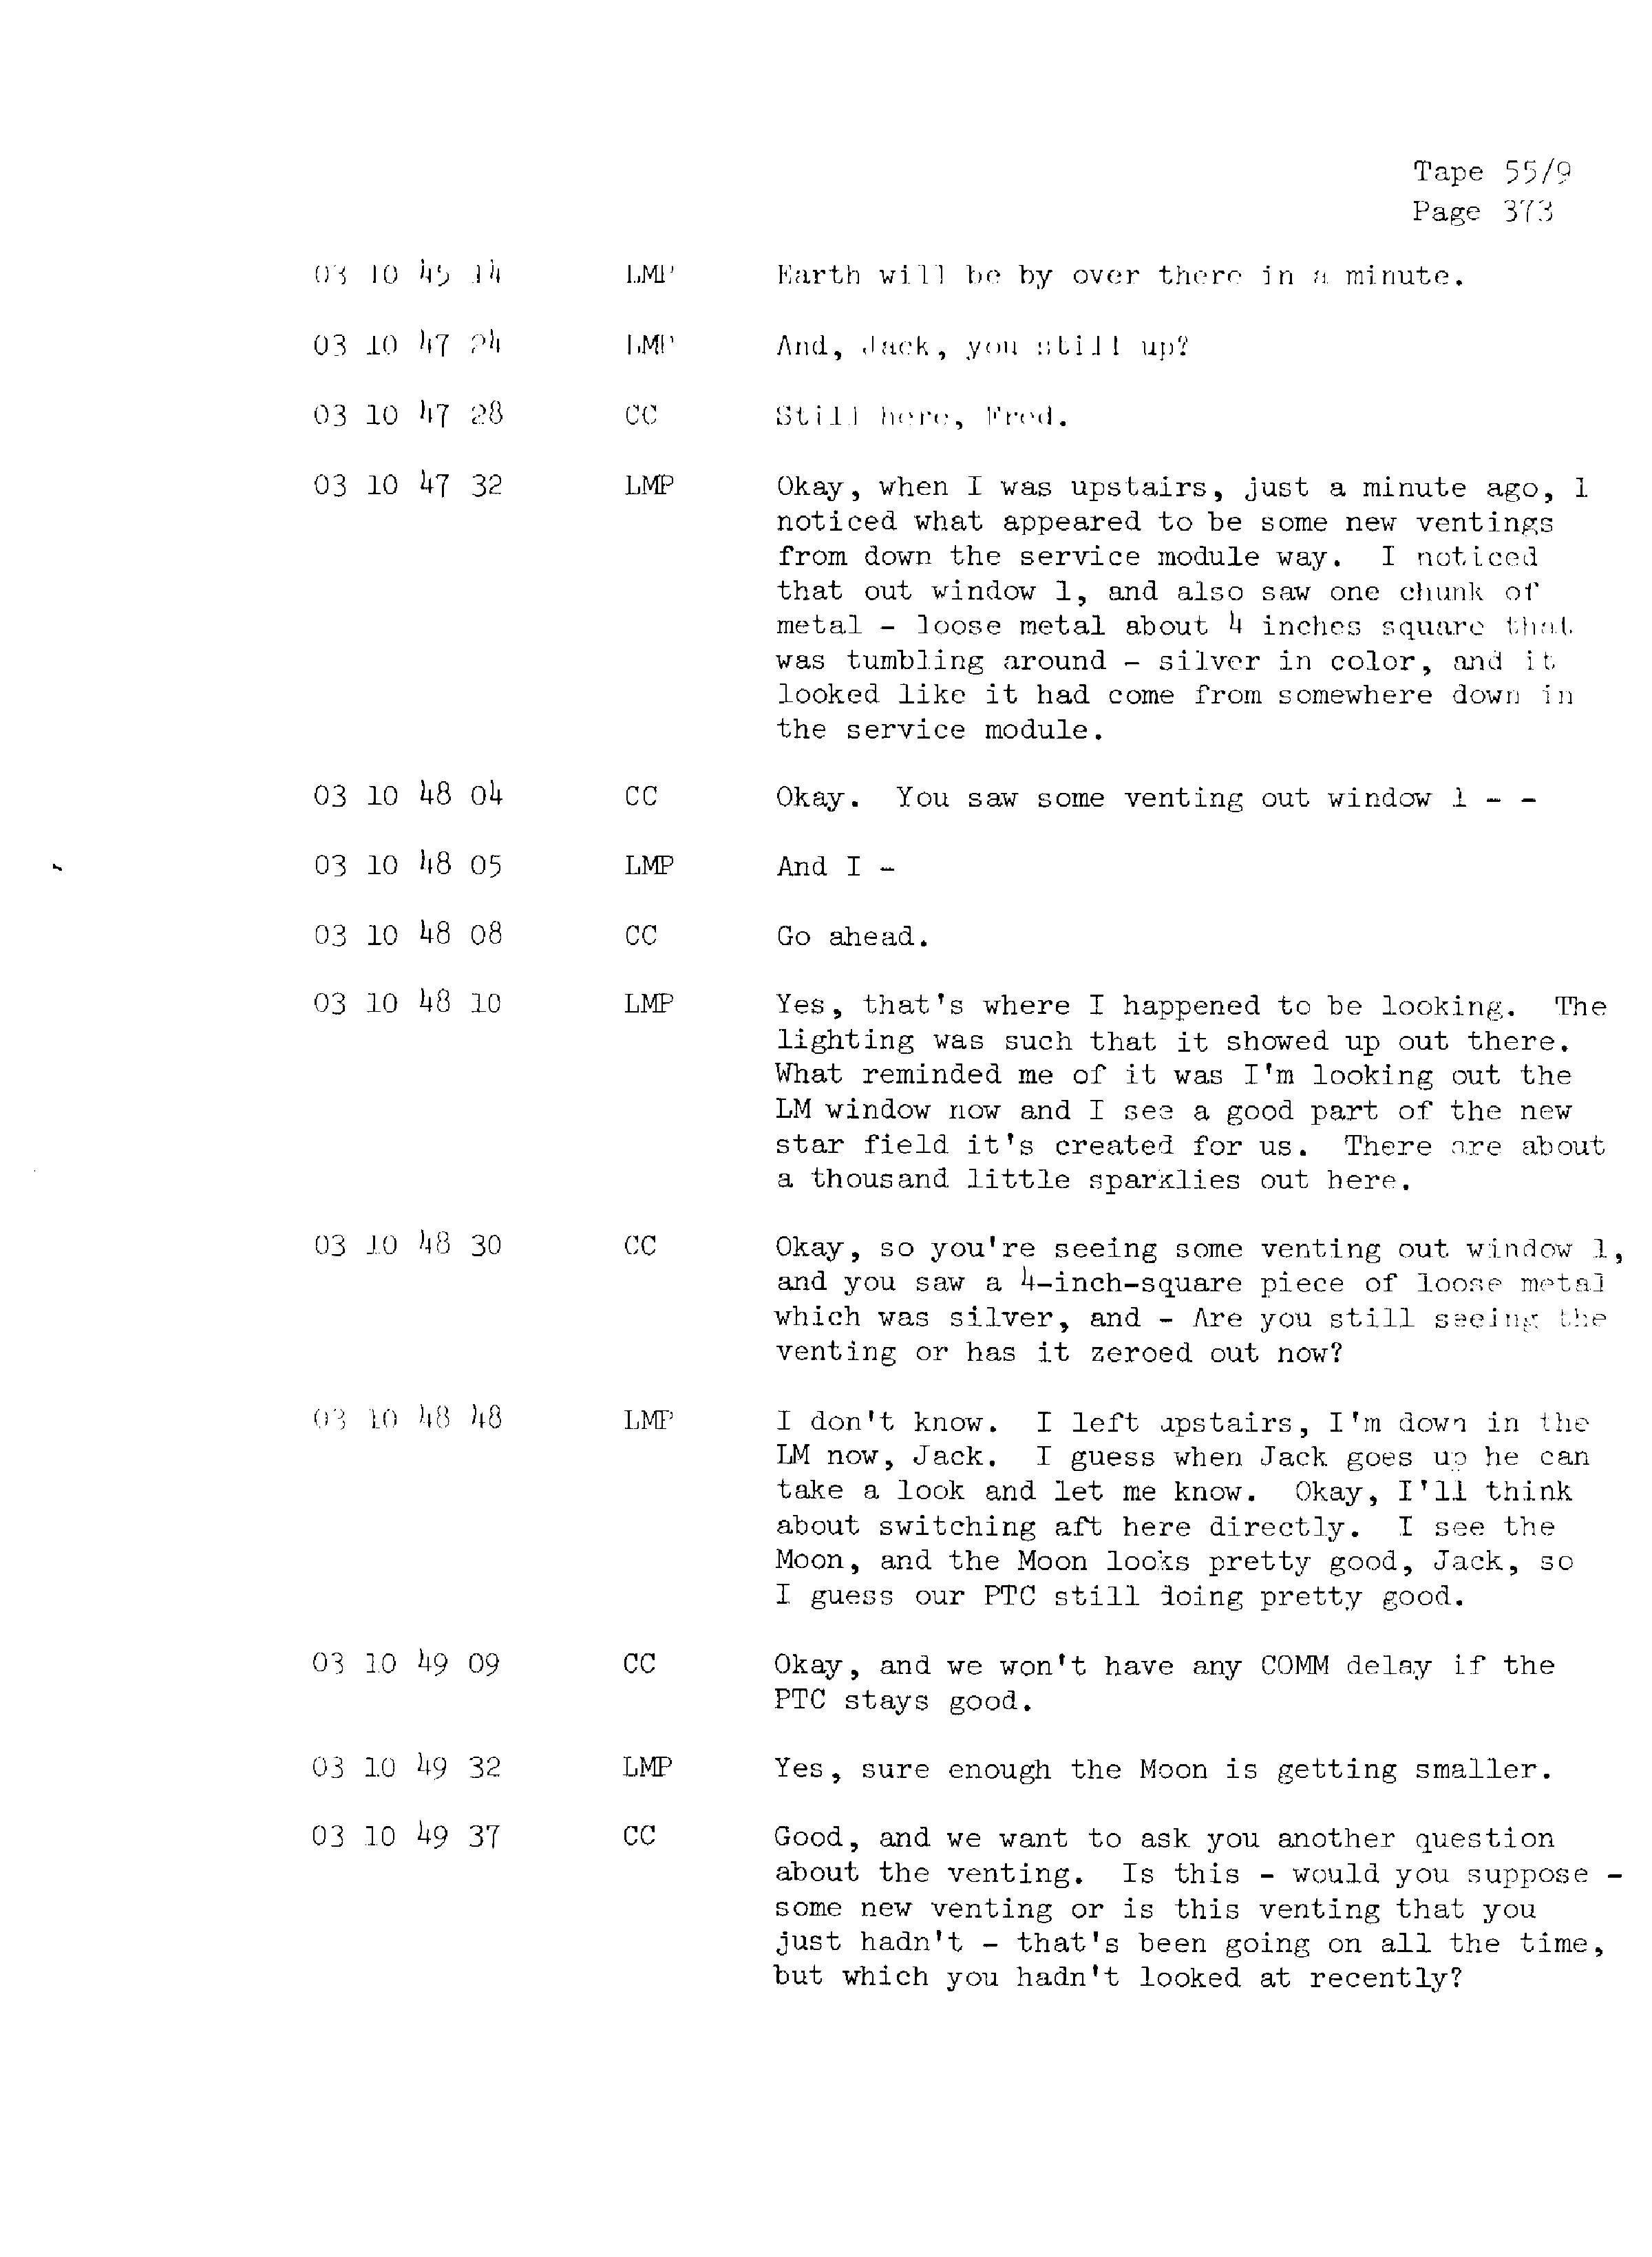 Page 380 of Apollo 13’s original transcript